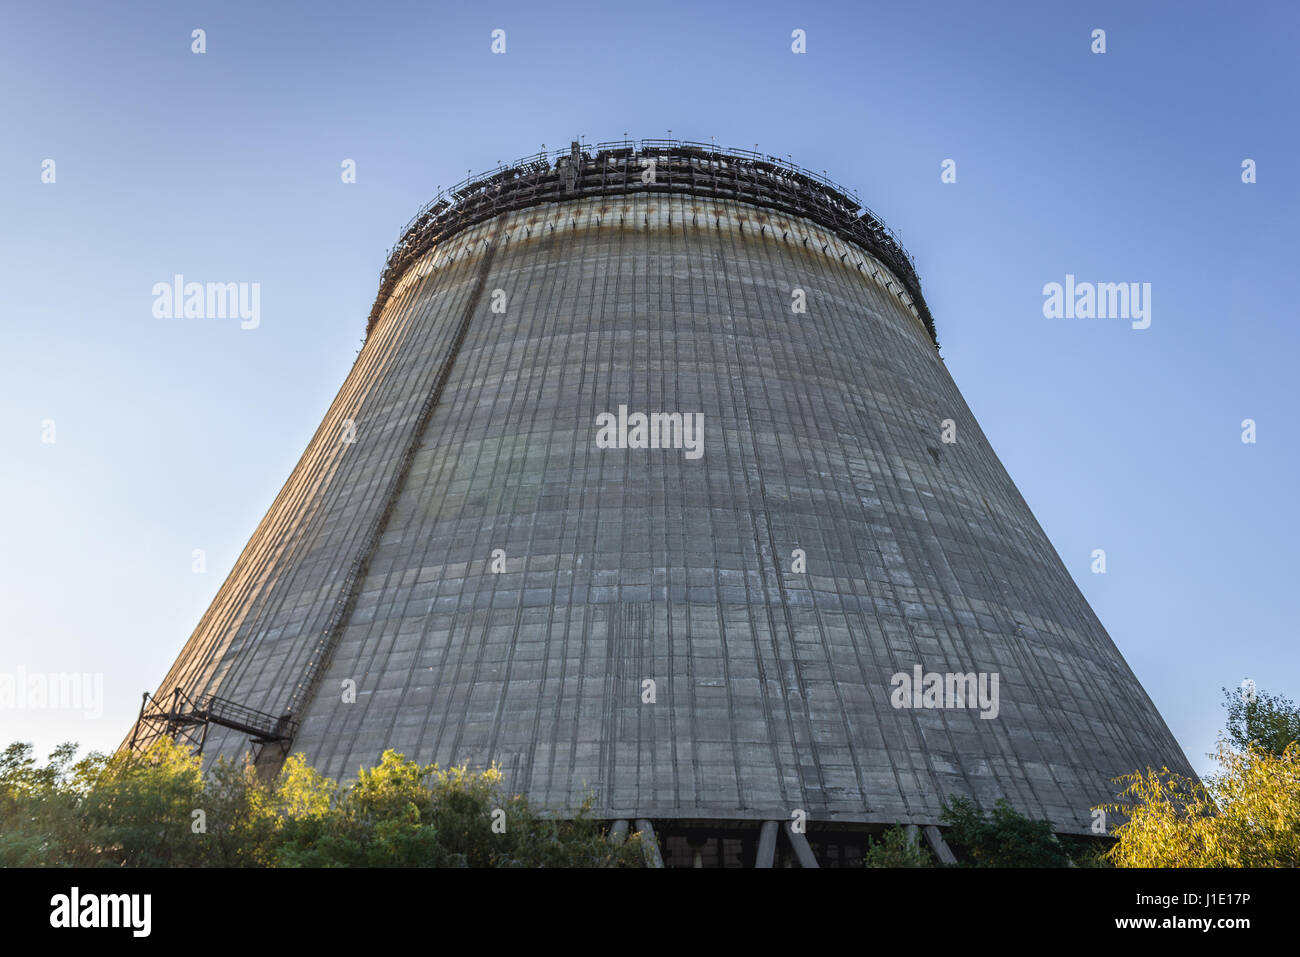 Vista de la torre de refrigeración de la central nuclear de Chernobyl en la zona de alienación en torno a la catástrofe del reactor nuclear en Ucrania Foto de stock